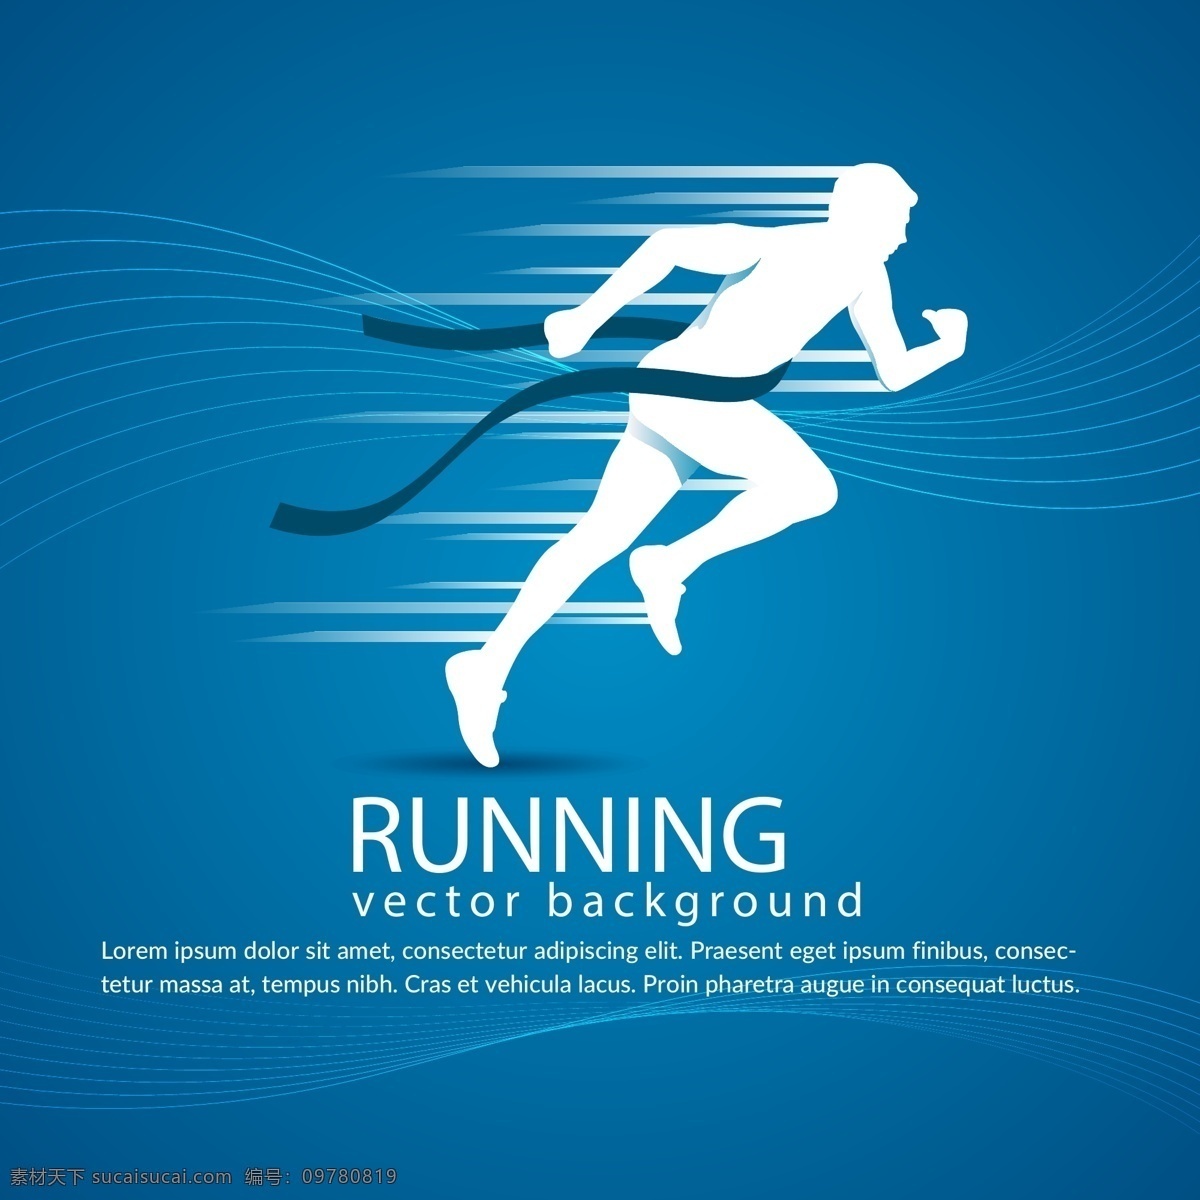 跑步 运动 体育运动 奥运会 比赛 运动海报 运动比赛海报 运动员 户外运动 室内运动 运动俱乐部 体育馆海报 卡通设计